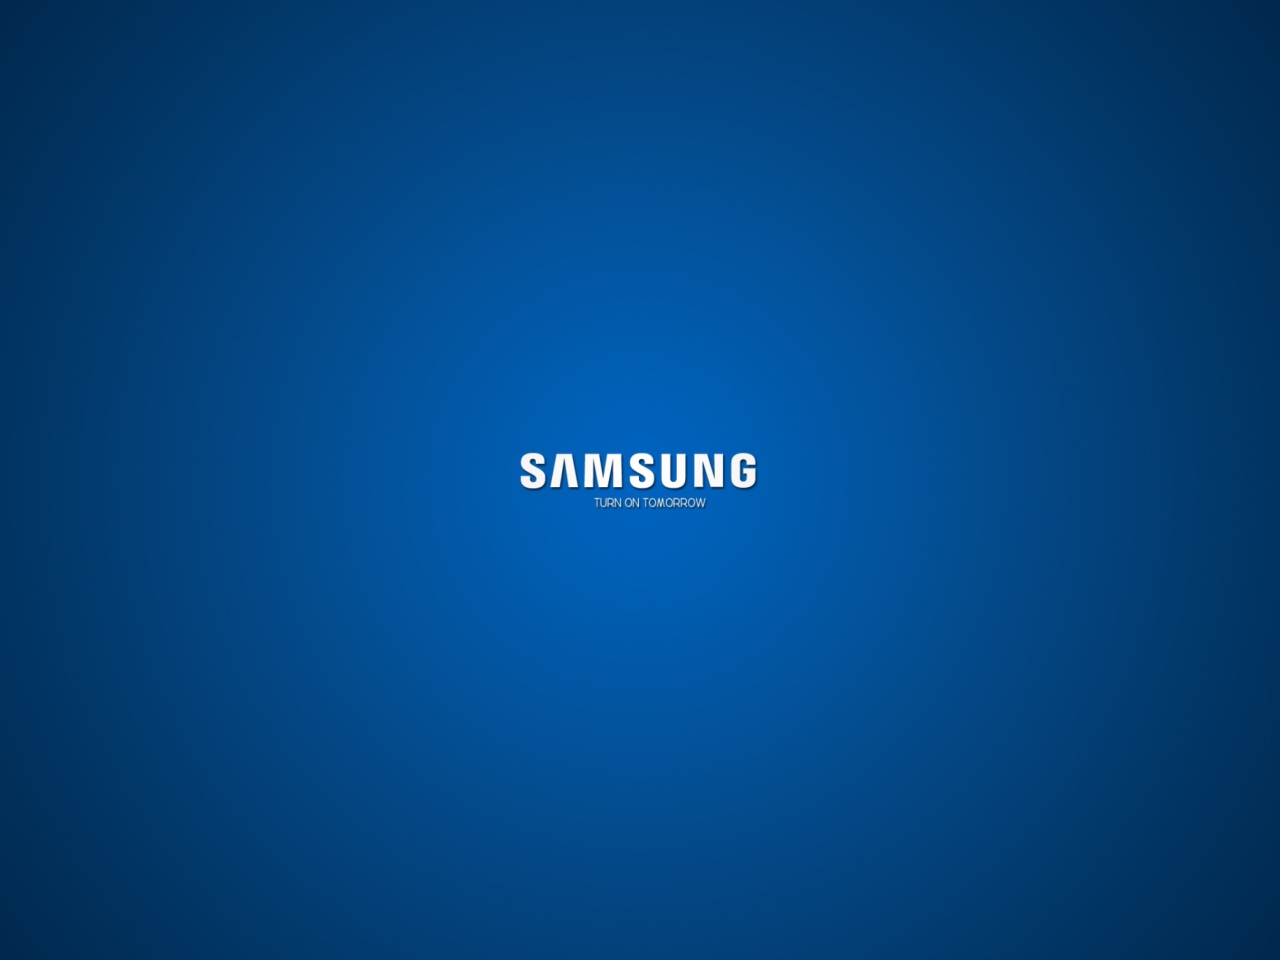 Samsung wallpaper 1280x960